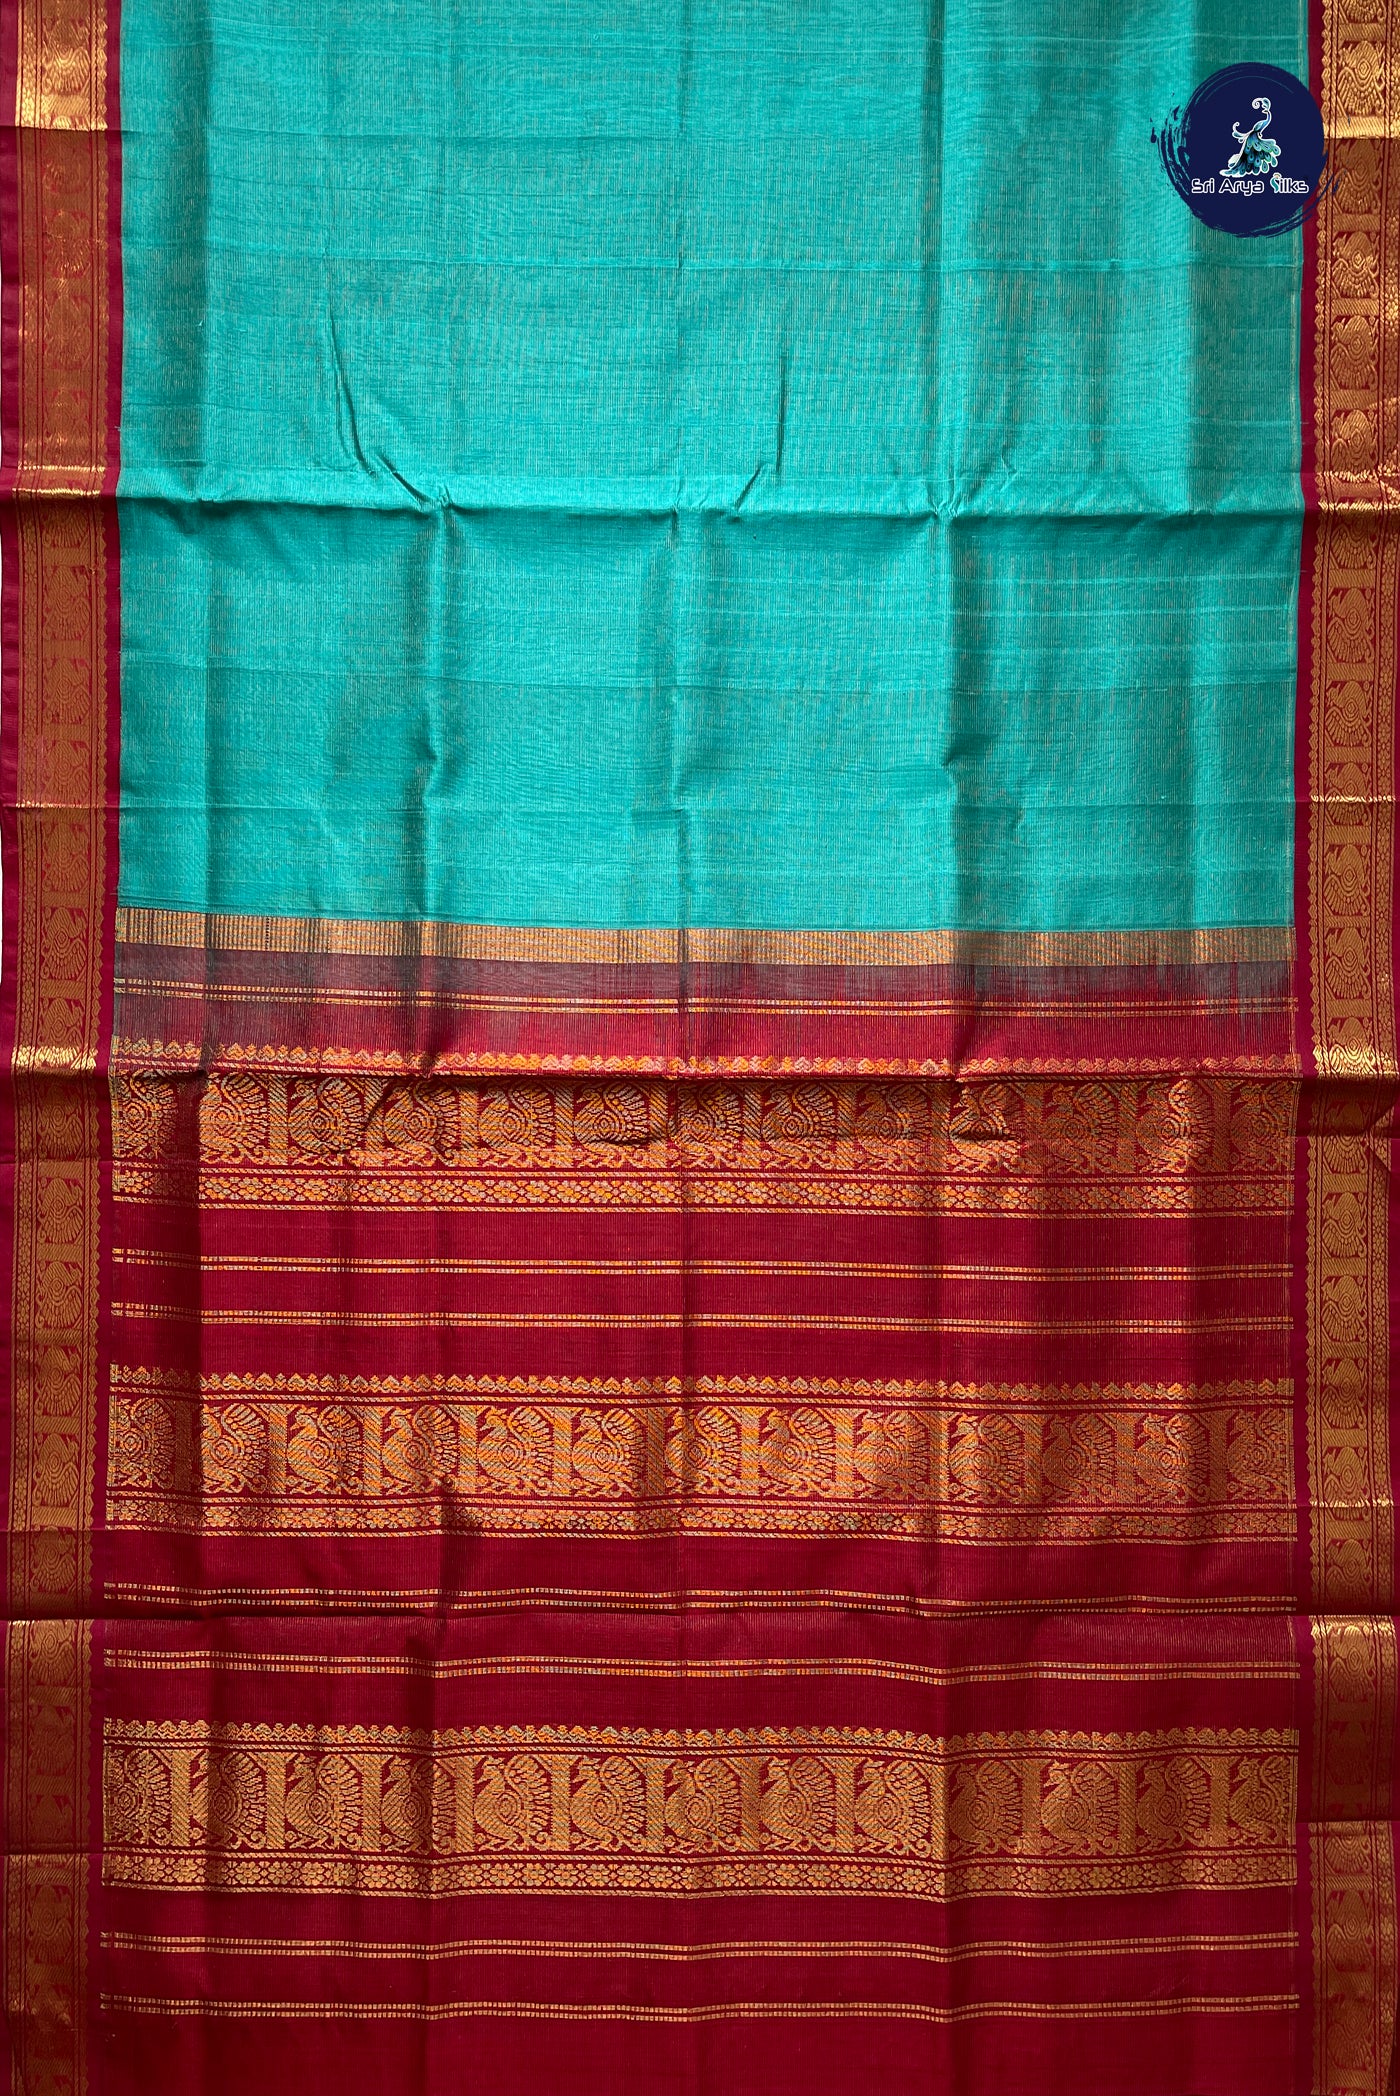 Turquoise Vaira Oosi Silk Cotton Saree With Vaira Oosi Pattern